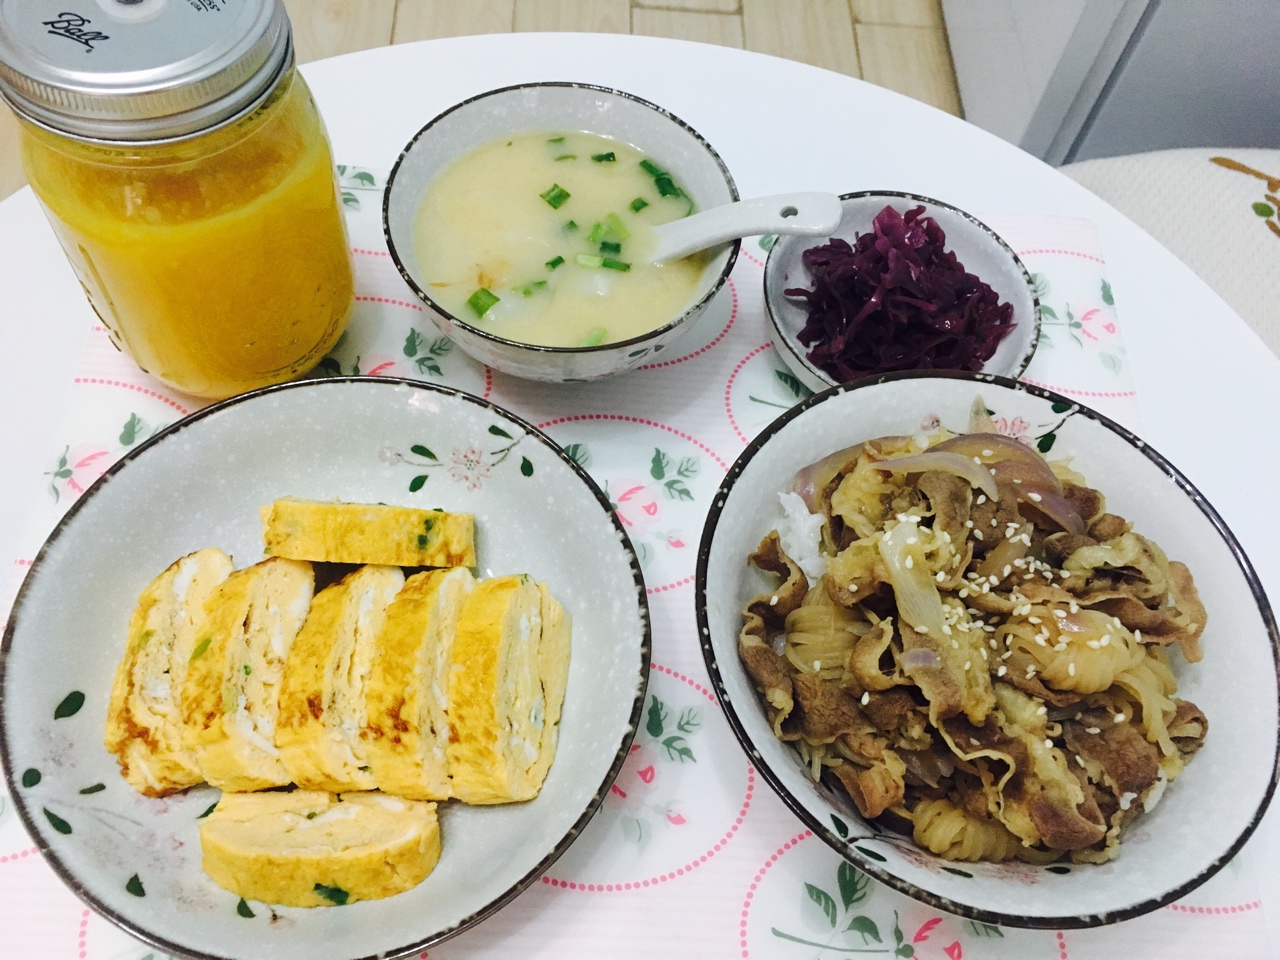 日式肥牛饭+厚蛋烧便当+菠萝橙子汁【曼达小馆】